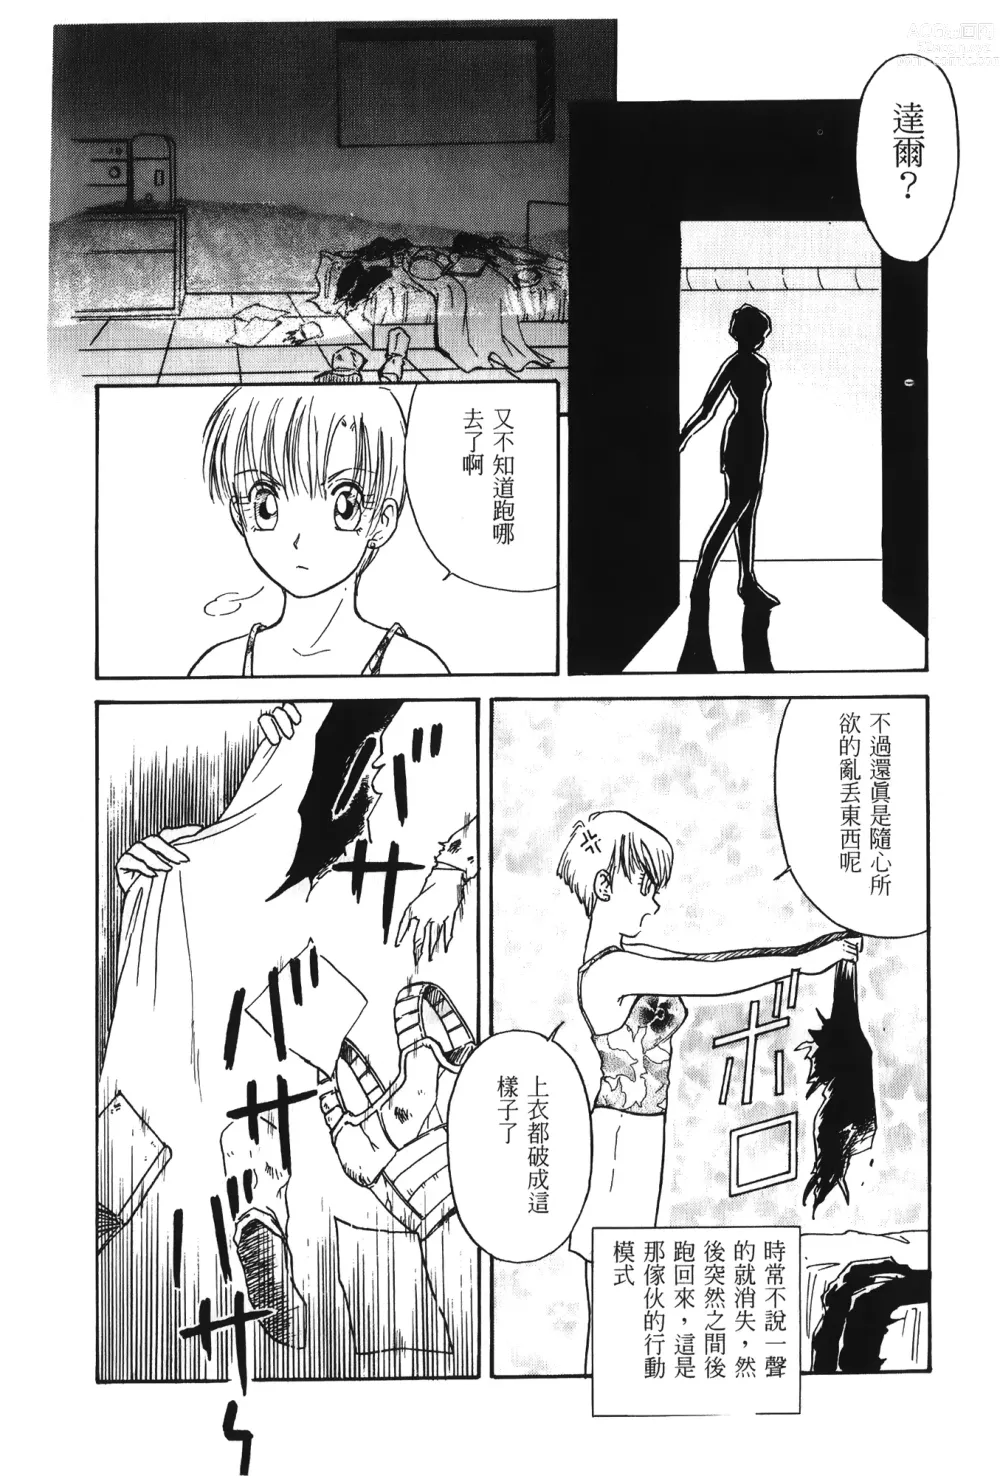 Page 35 of doujinshi ドラゴンパール 01